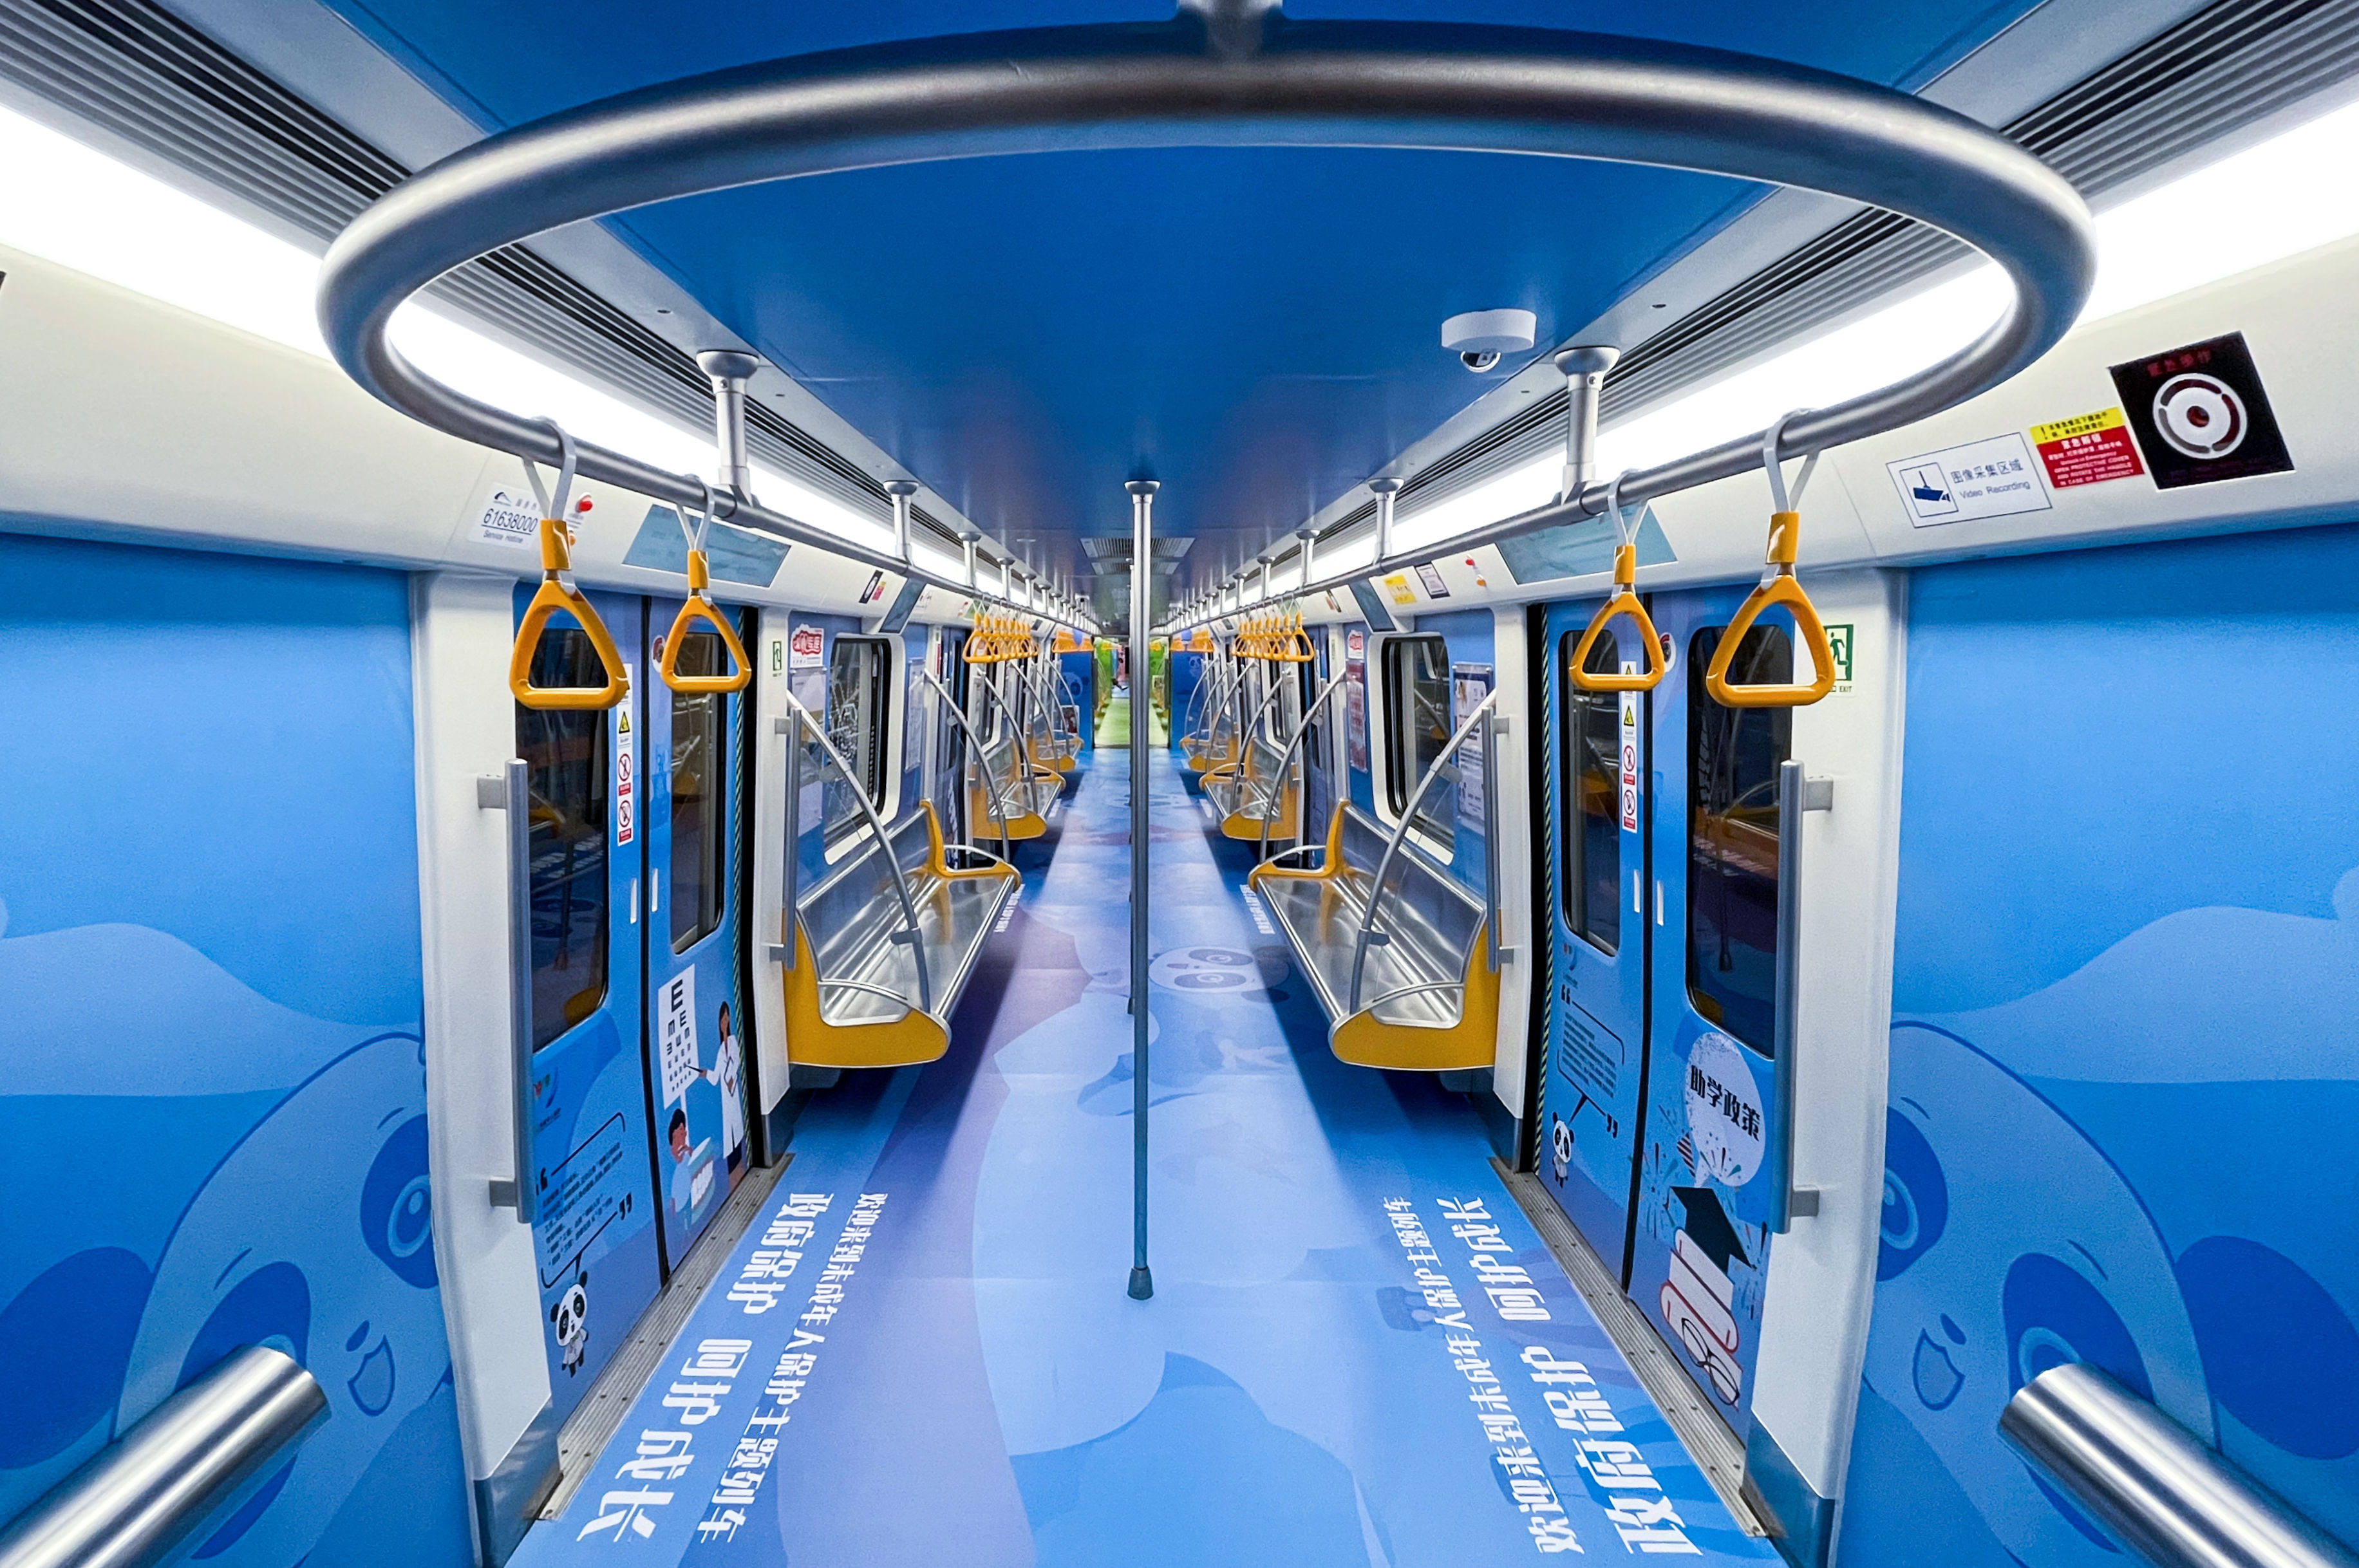 成都地铁“未成年人保护号”主题列车上线